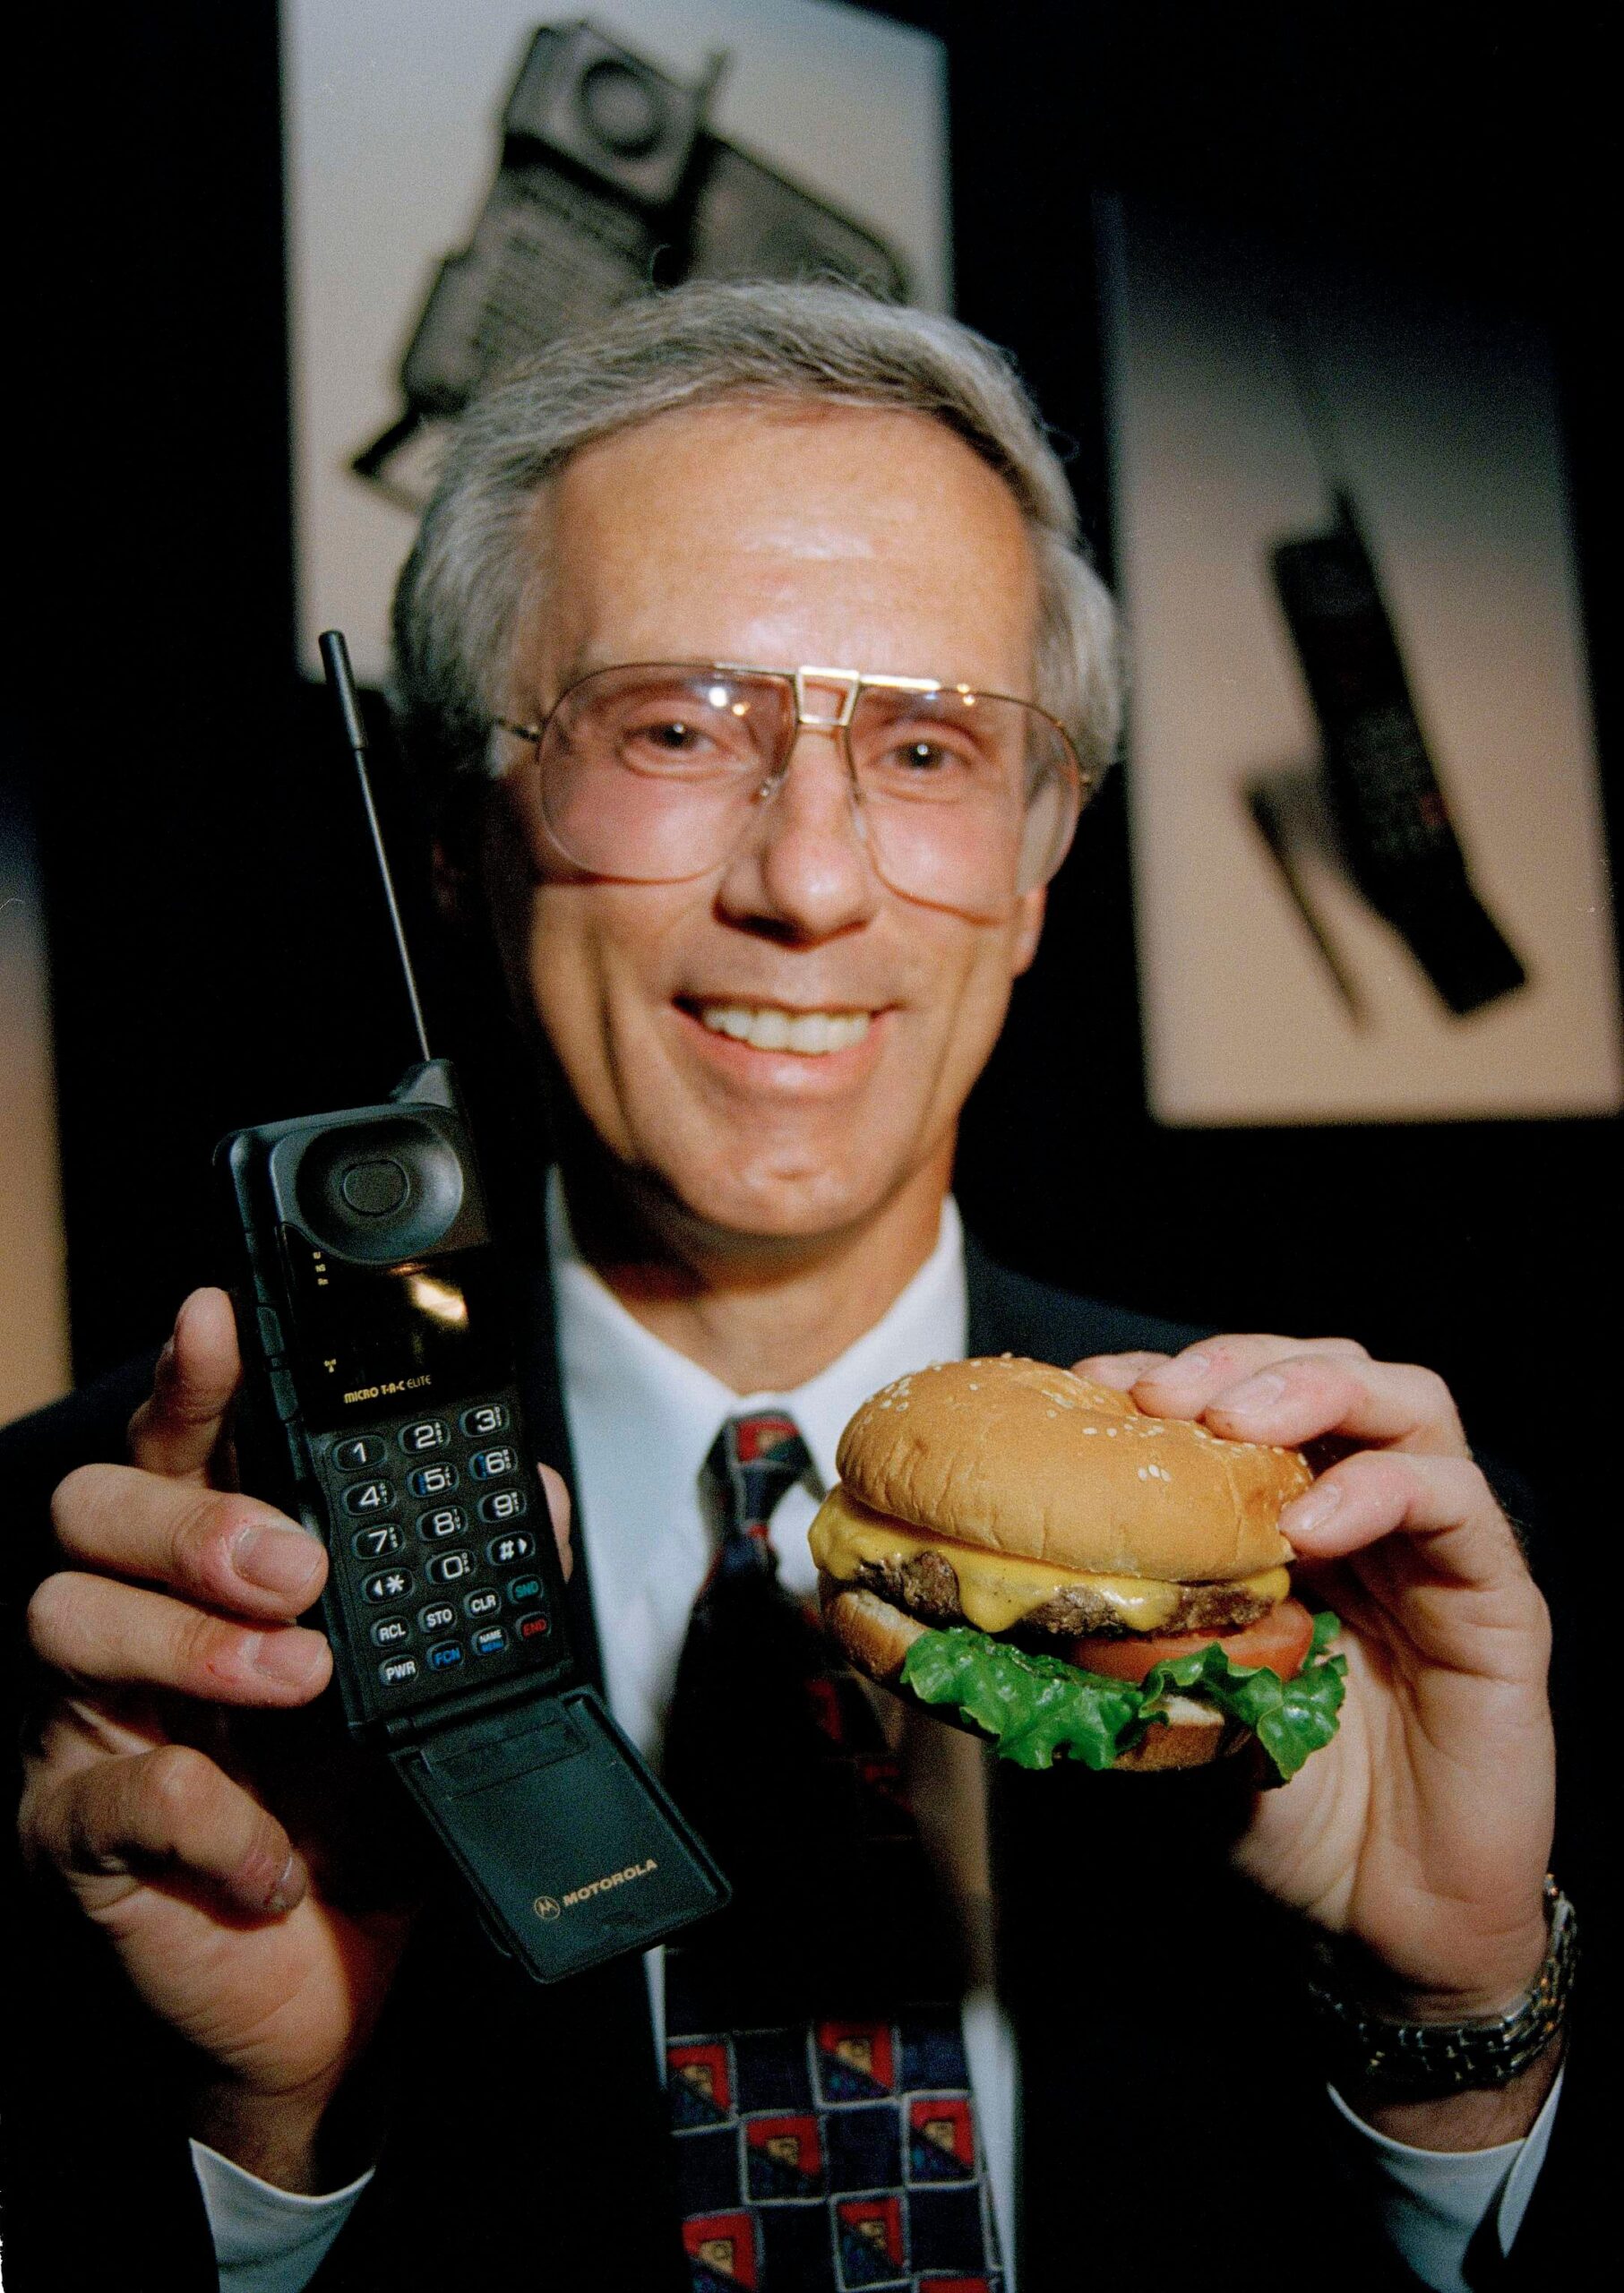 man met grijs haar in een pak met in zijn ene hand een Motorola MicroTac Elite mobiele telefoon en in zijn andere hand een hamburger om de maten te vergelijken.